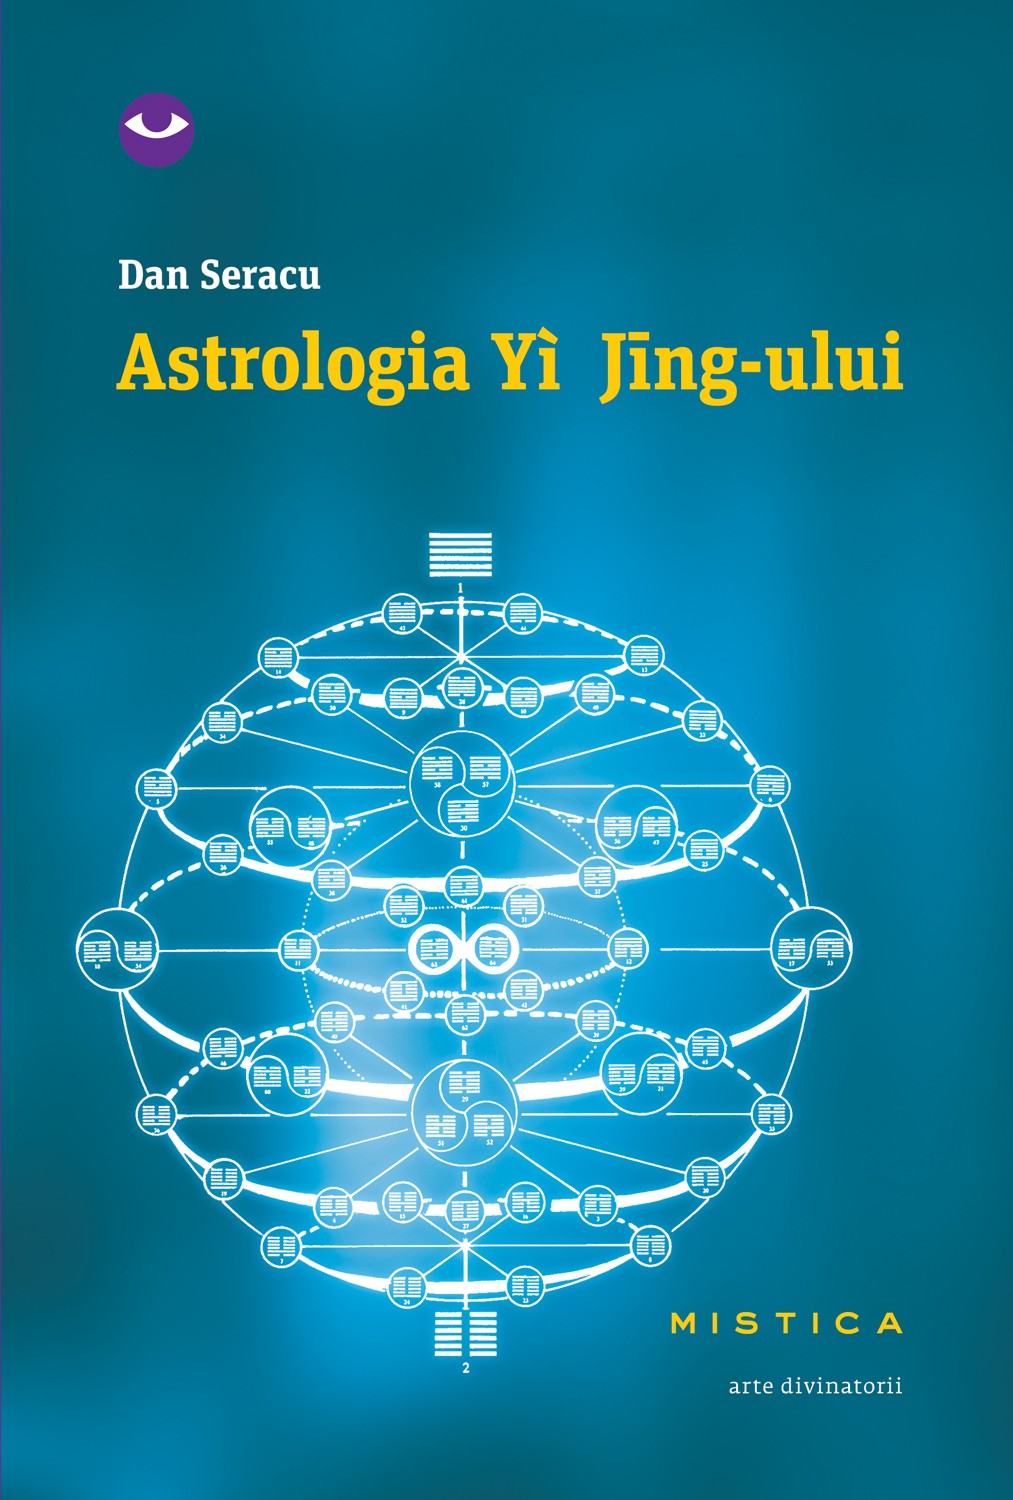 Astrologia Yi Njing-ului - Dan Seracu